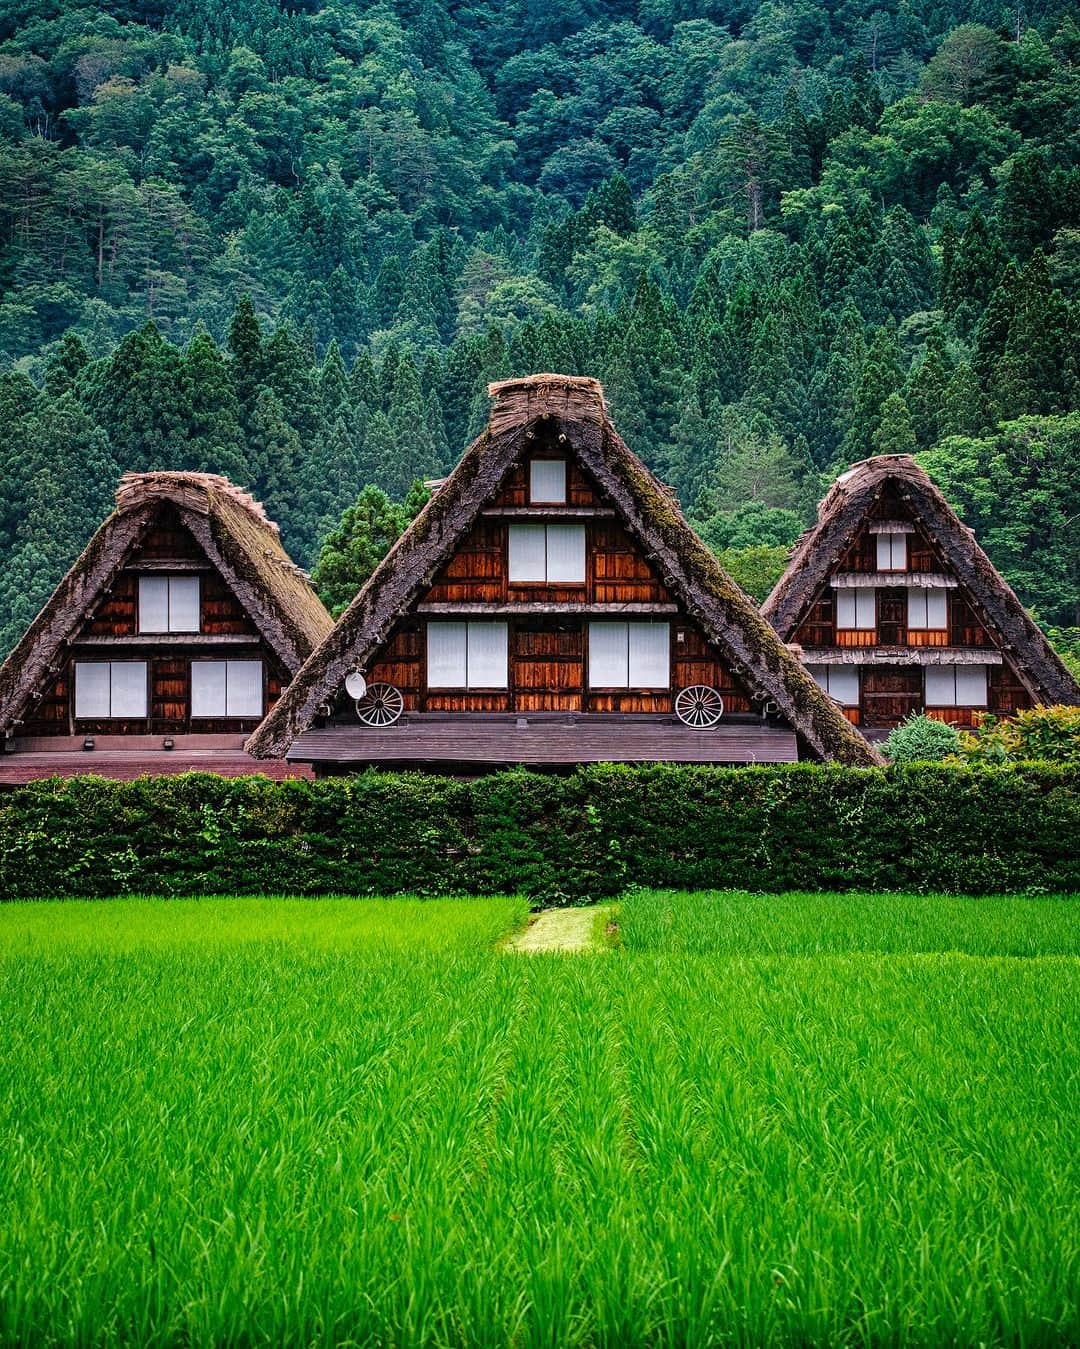 SHOCK EYEのインスタグラム：「夏の白川郷✨ ここは、世界遺産として有名な場所。  日本の農村の原風景を残す合掌造の集落を歩いていると、まるでタイムスリップしたかのような感覚になる。  豪雪地帯ならではの屋根の形が、絵に描いたような三角形で、とても可愛らしい✨  ここにきて感じたのは、 青々とした自然、小さな生き物たち、都会にいると決して味わえないゆっくりとした静かな時間の流れ、香りや空気が、疲れた心を浄化してくれるってこと。 自然を感じ、触れ合うことの大切さを改めて感じたよ。  秋には稲穂が黄金色に輝き、冬には一面雪景色になるそう。  是非また違う季節に訪れてみたい場所だなあ。  #白川郷 #世界遺産 #shirakawago #worldheritage」